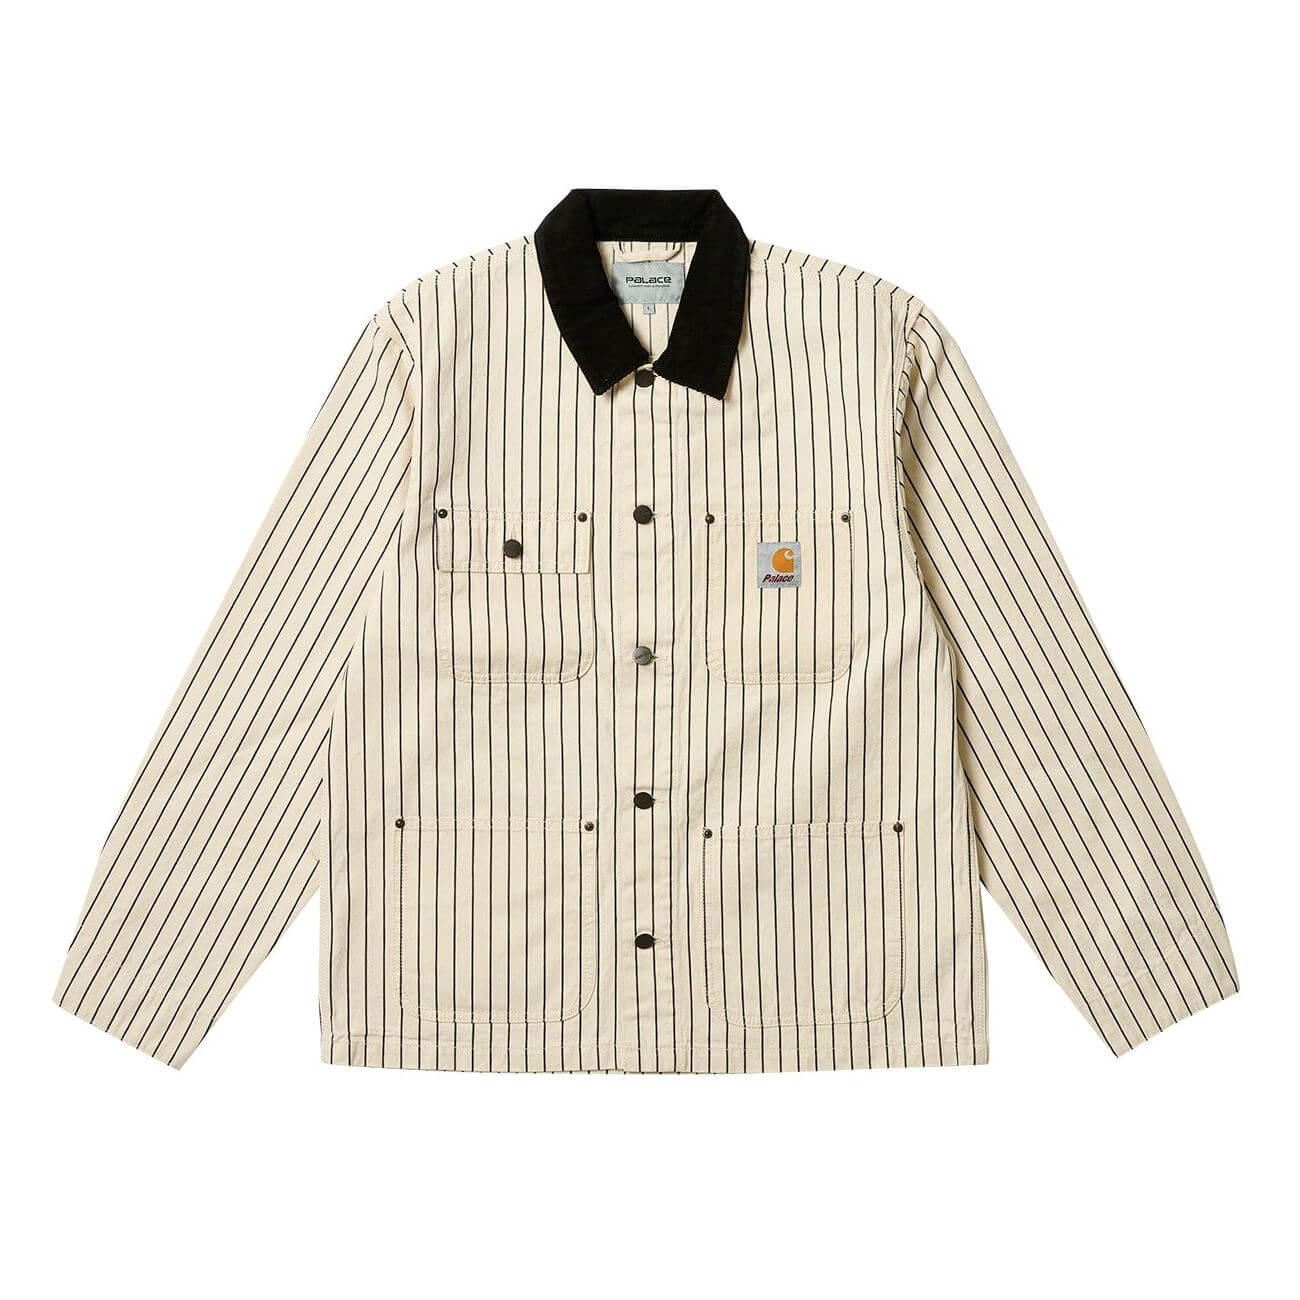 Куртка-рубашка Carhartt WIP x Palace Michigan 'Hickory Wax/Black', кремовый/черный